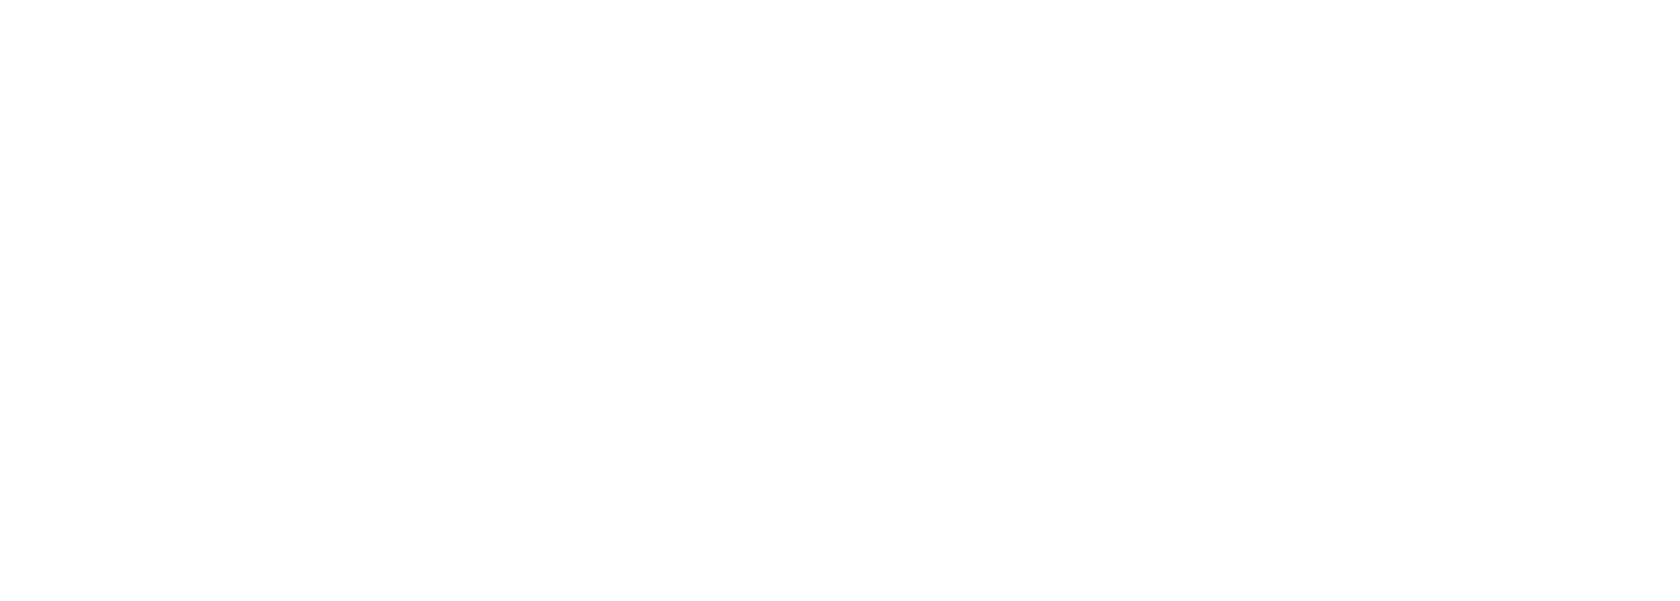 Lion Business Club - Закрытый клуб для предпринимателей.